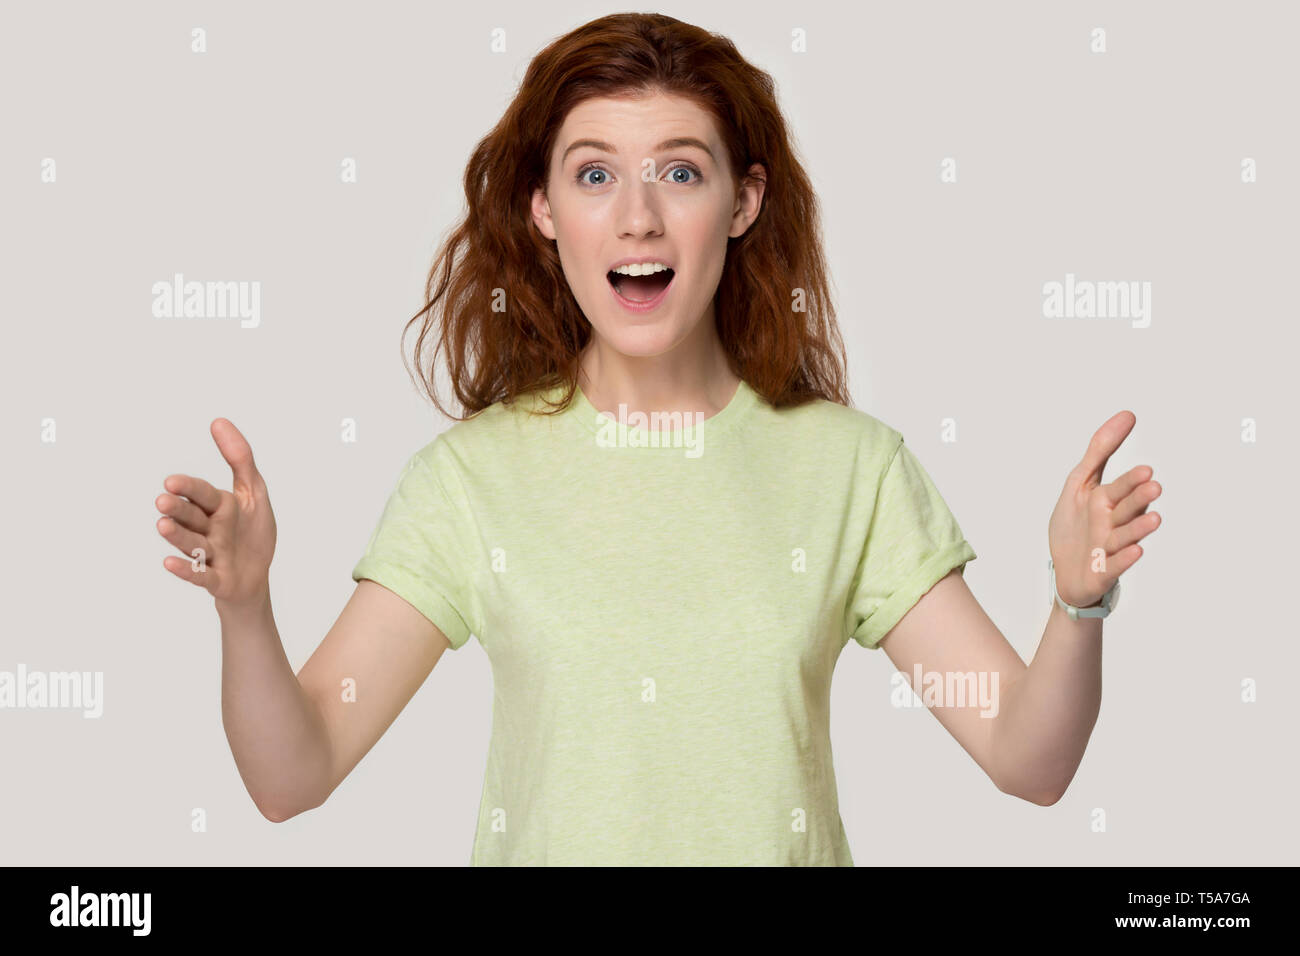 Emozionato redhead girl mostrare grandi dimensioni misurazione con le mani Foto Stock